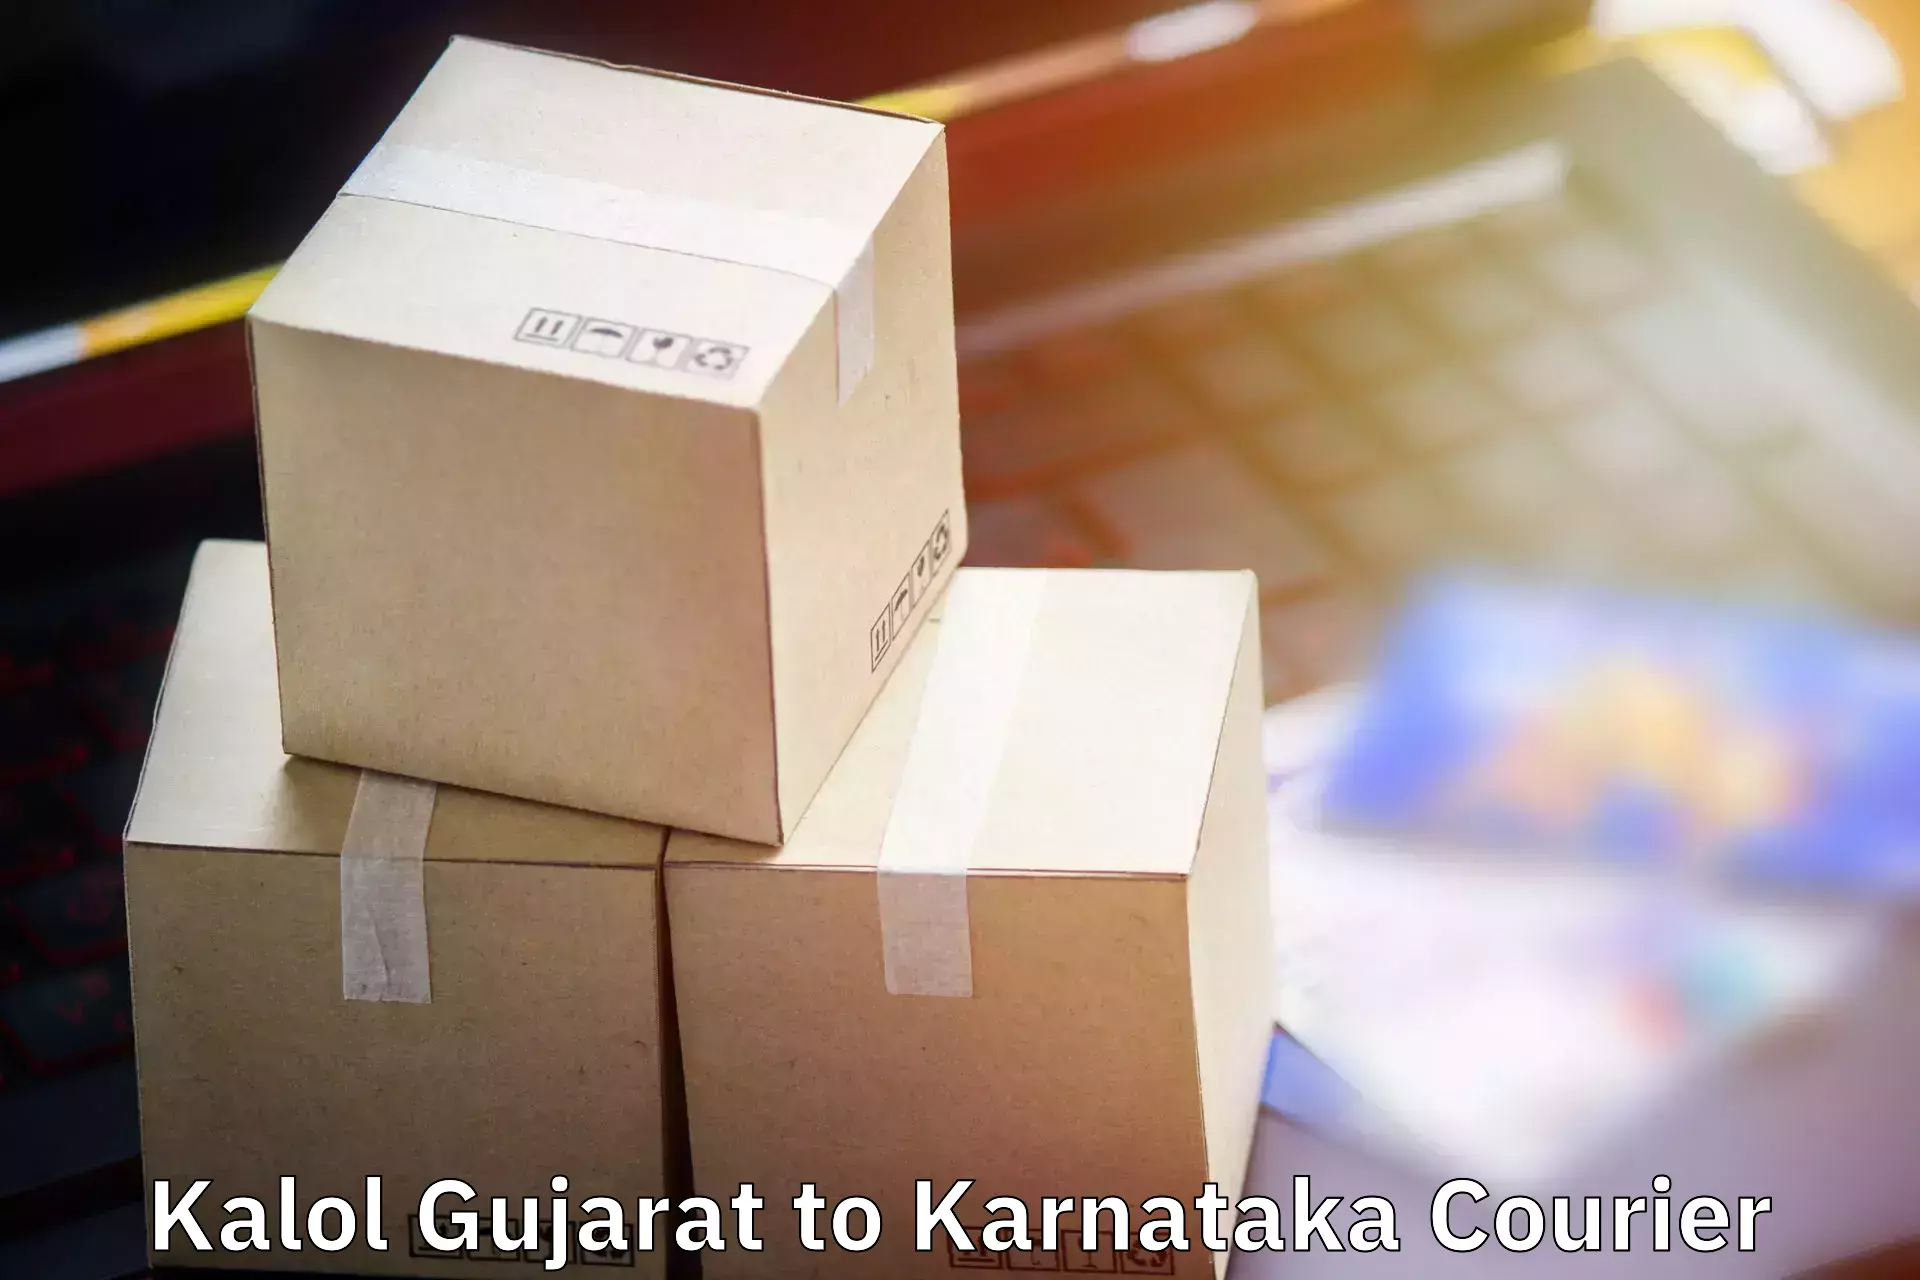 Quick luggage shipment Kalol Gujarat to Kanjarakatte